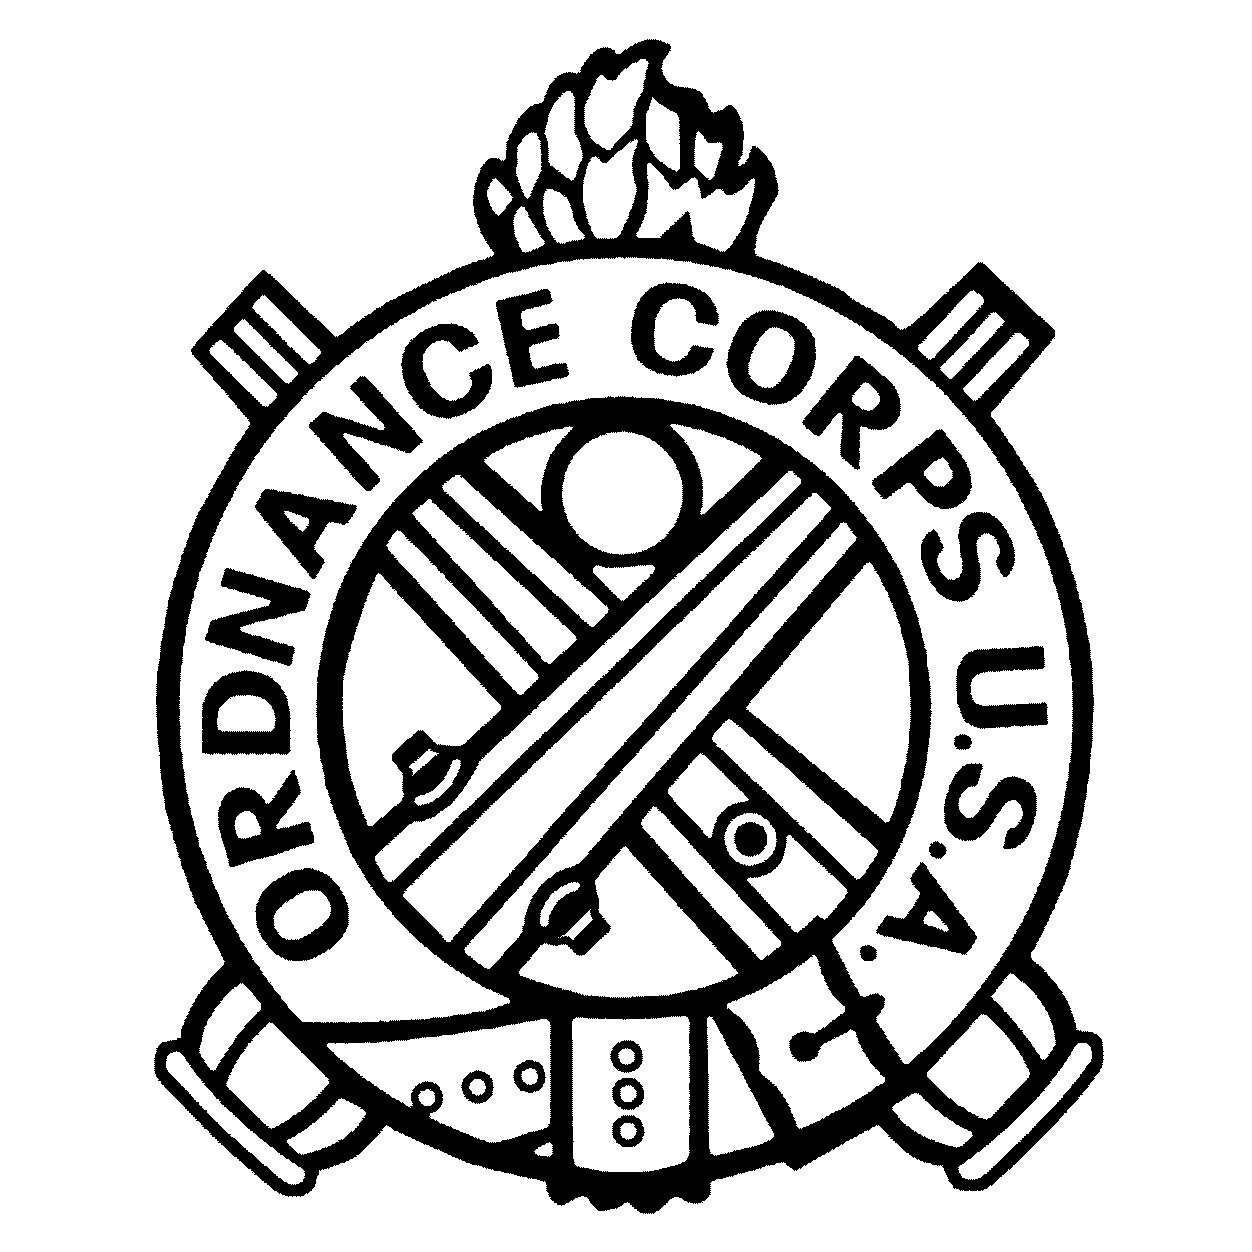 Us Army Ordnance Logos